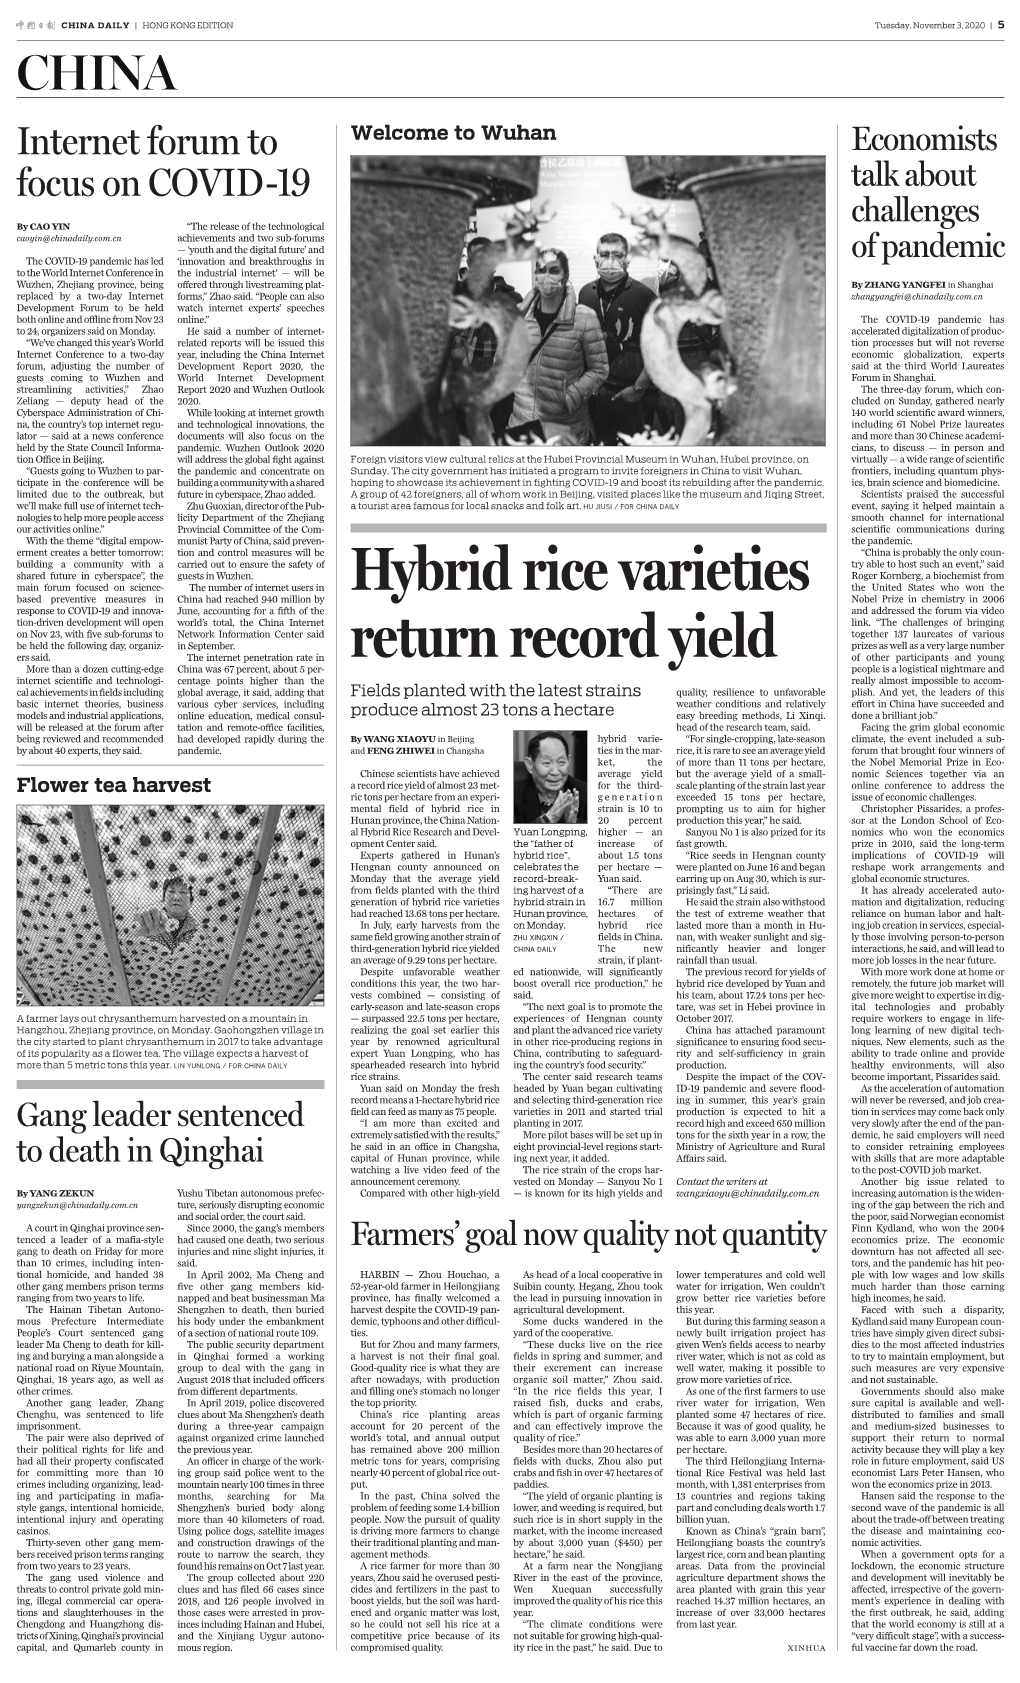 Hybrid Rice Varieties Return Record Yield